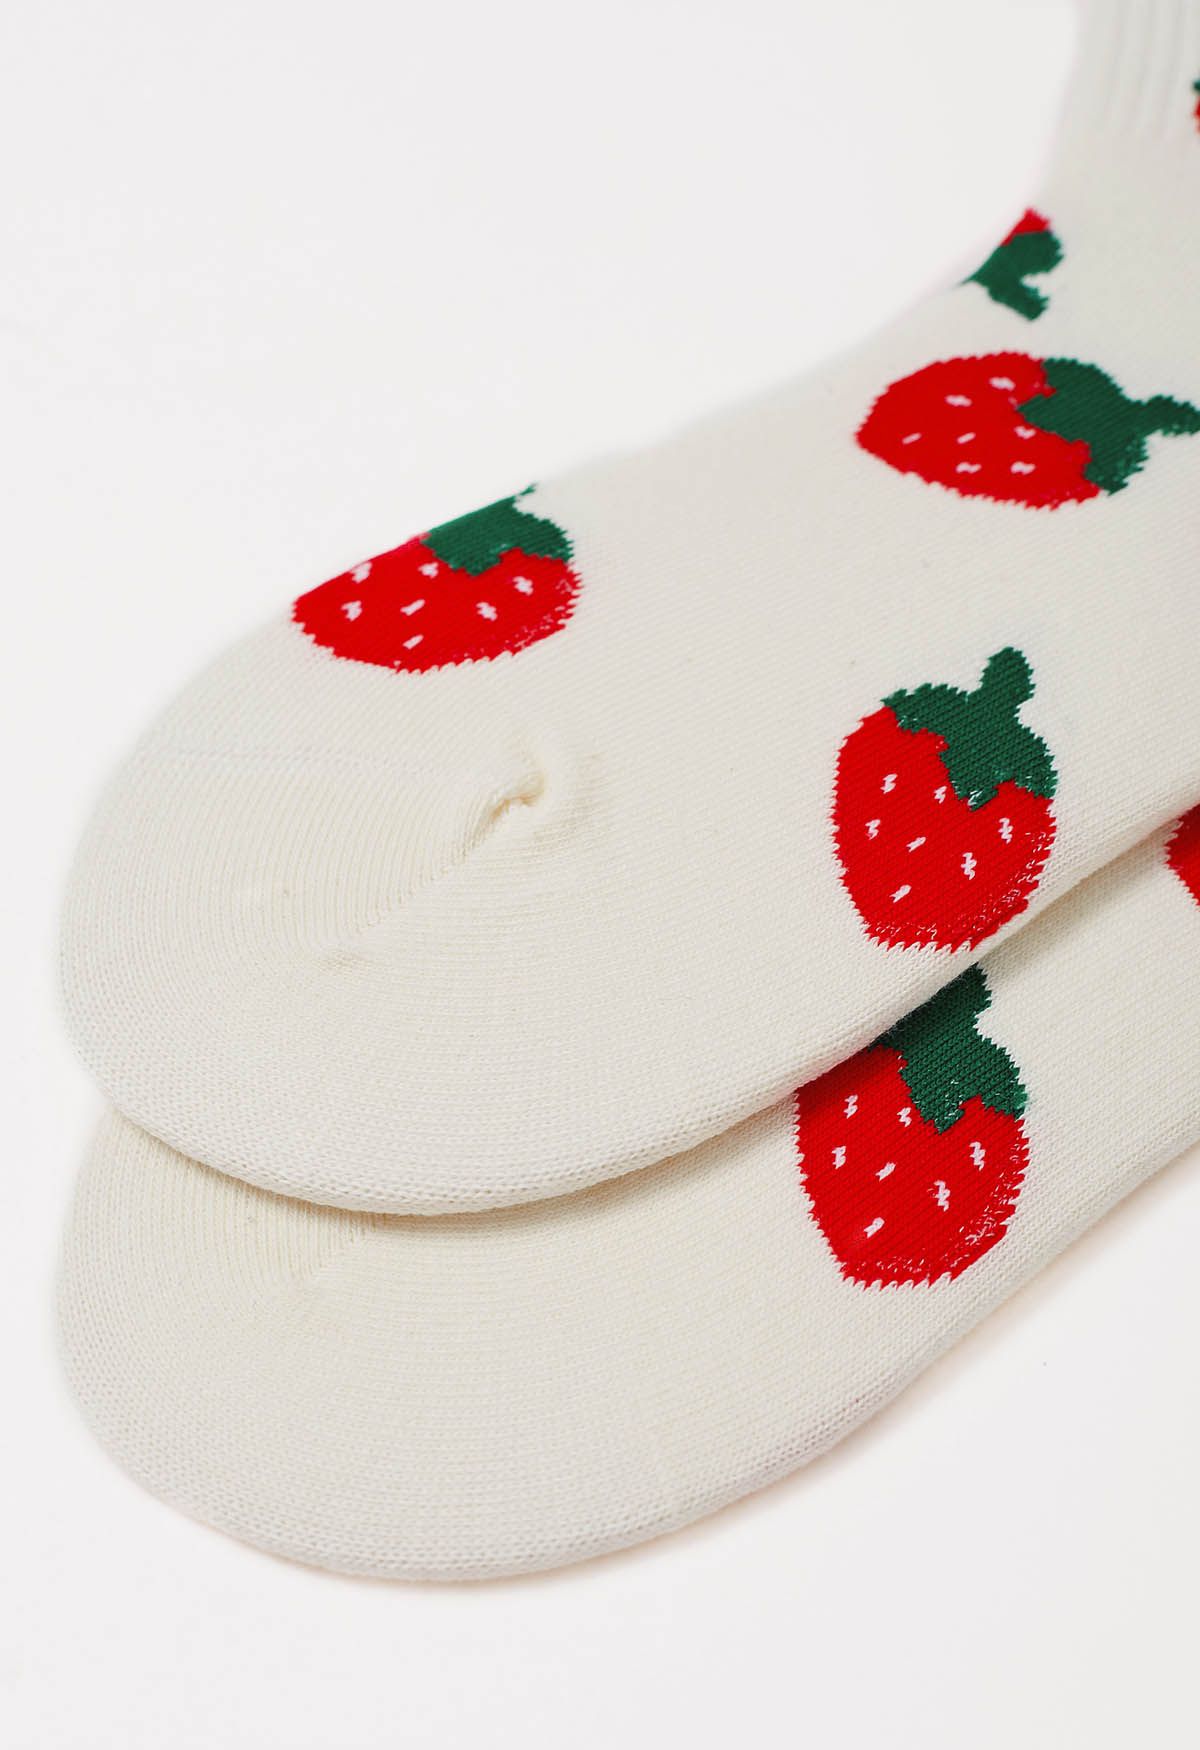 Chaussettes en coton à fraises de dessin animé